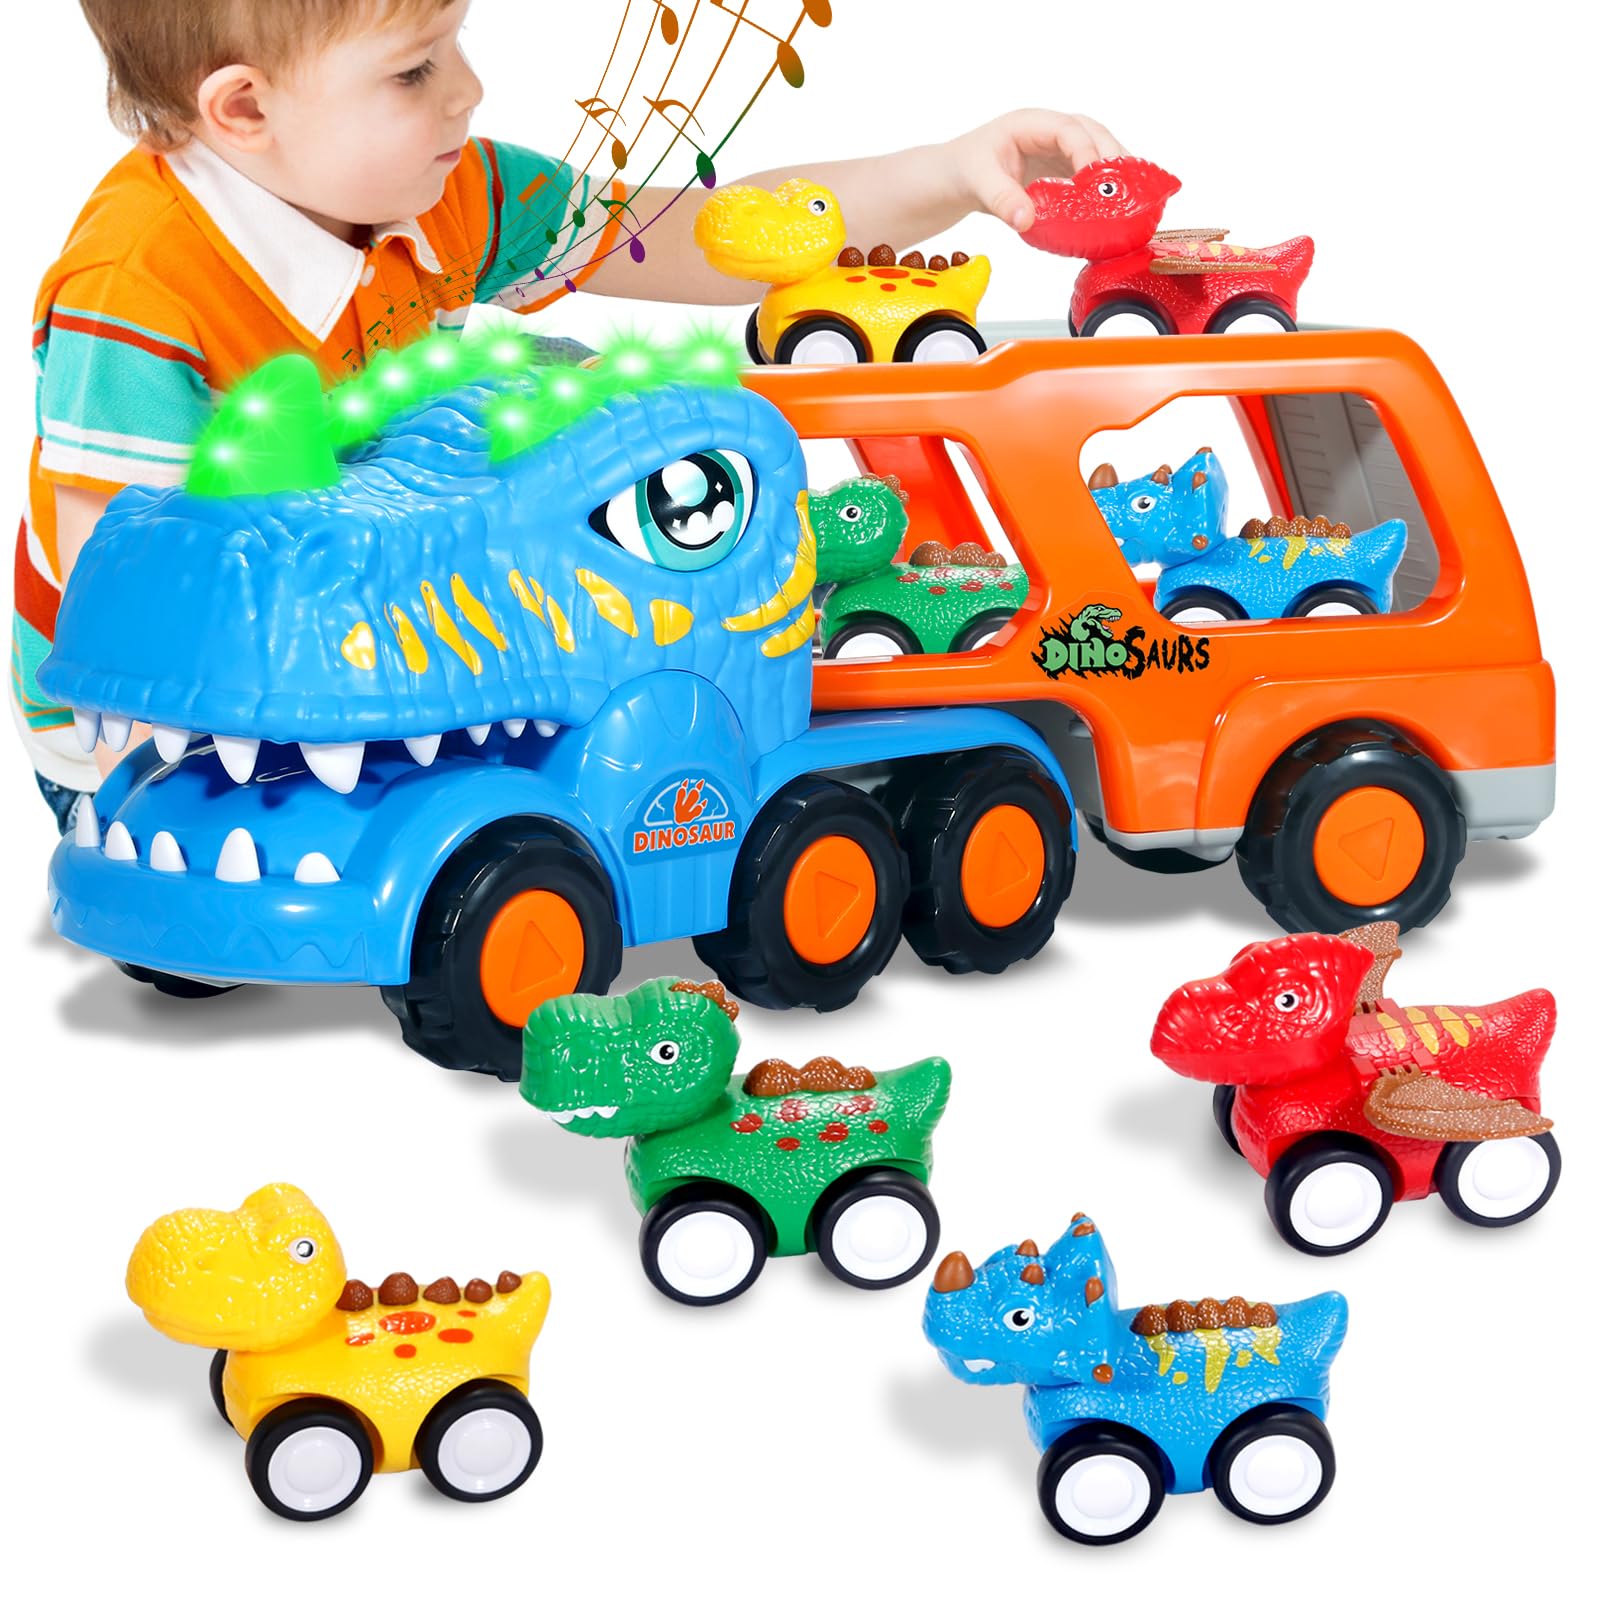 PNAEW Dinosaur Truck for Kids